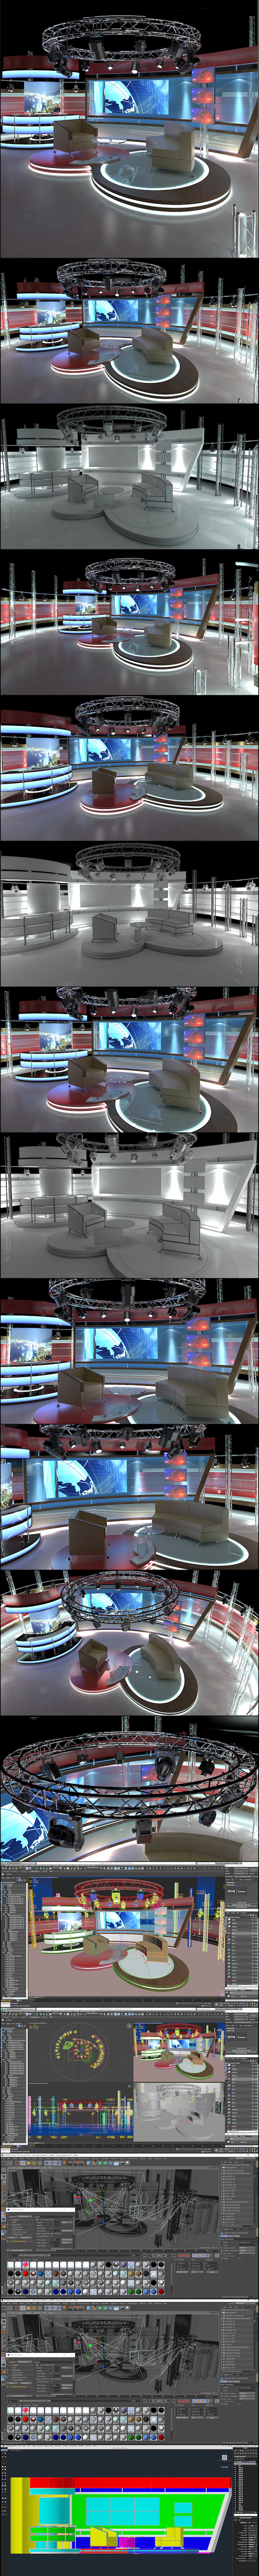 Virtual TV Studio - 3Docean 20735918